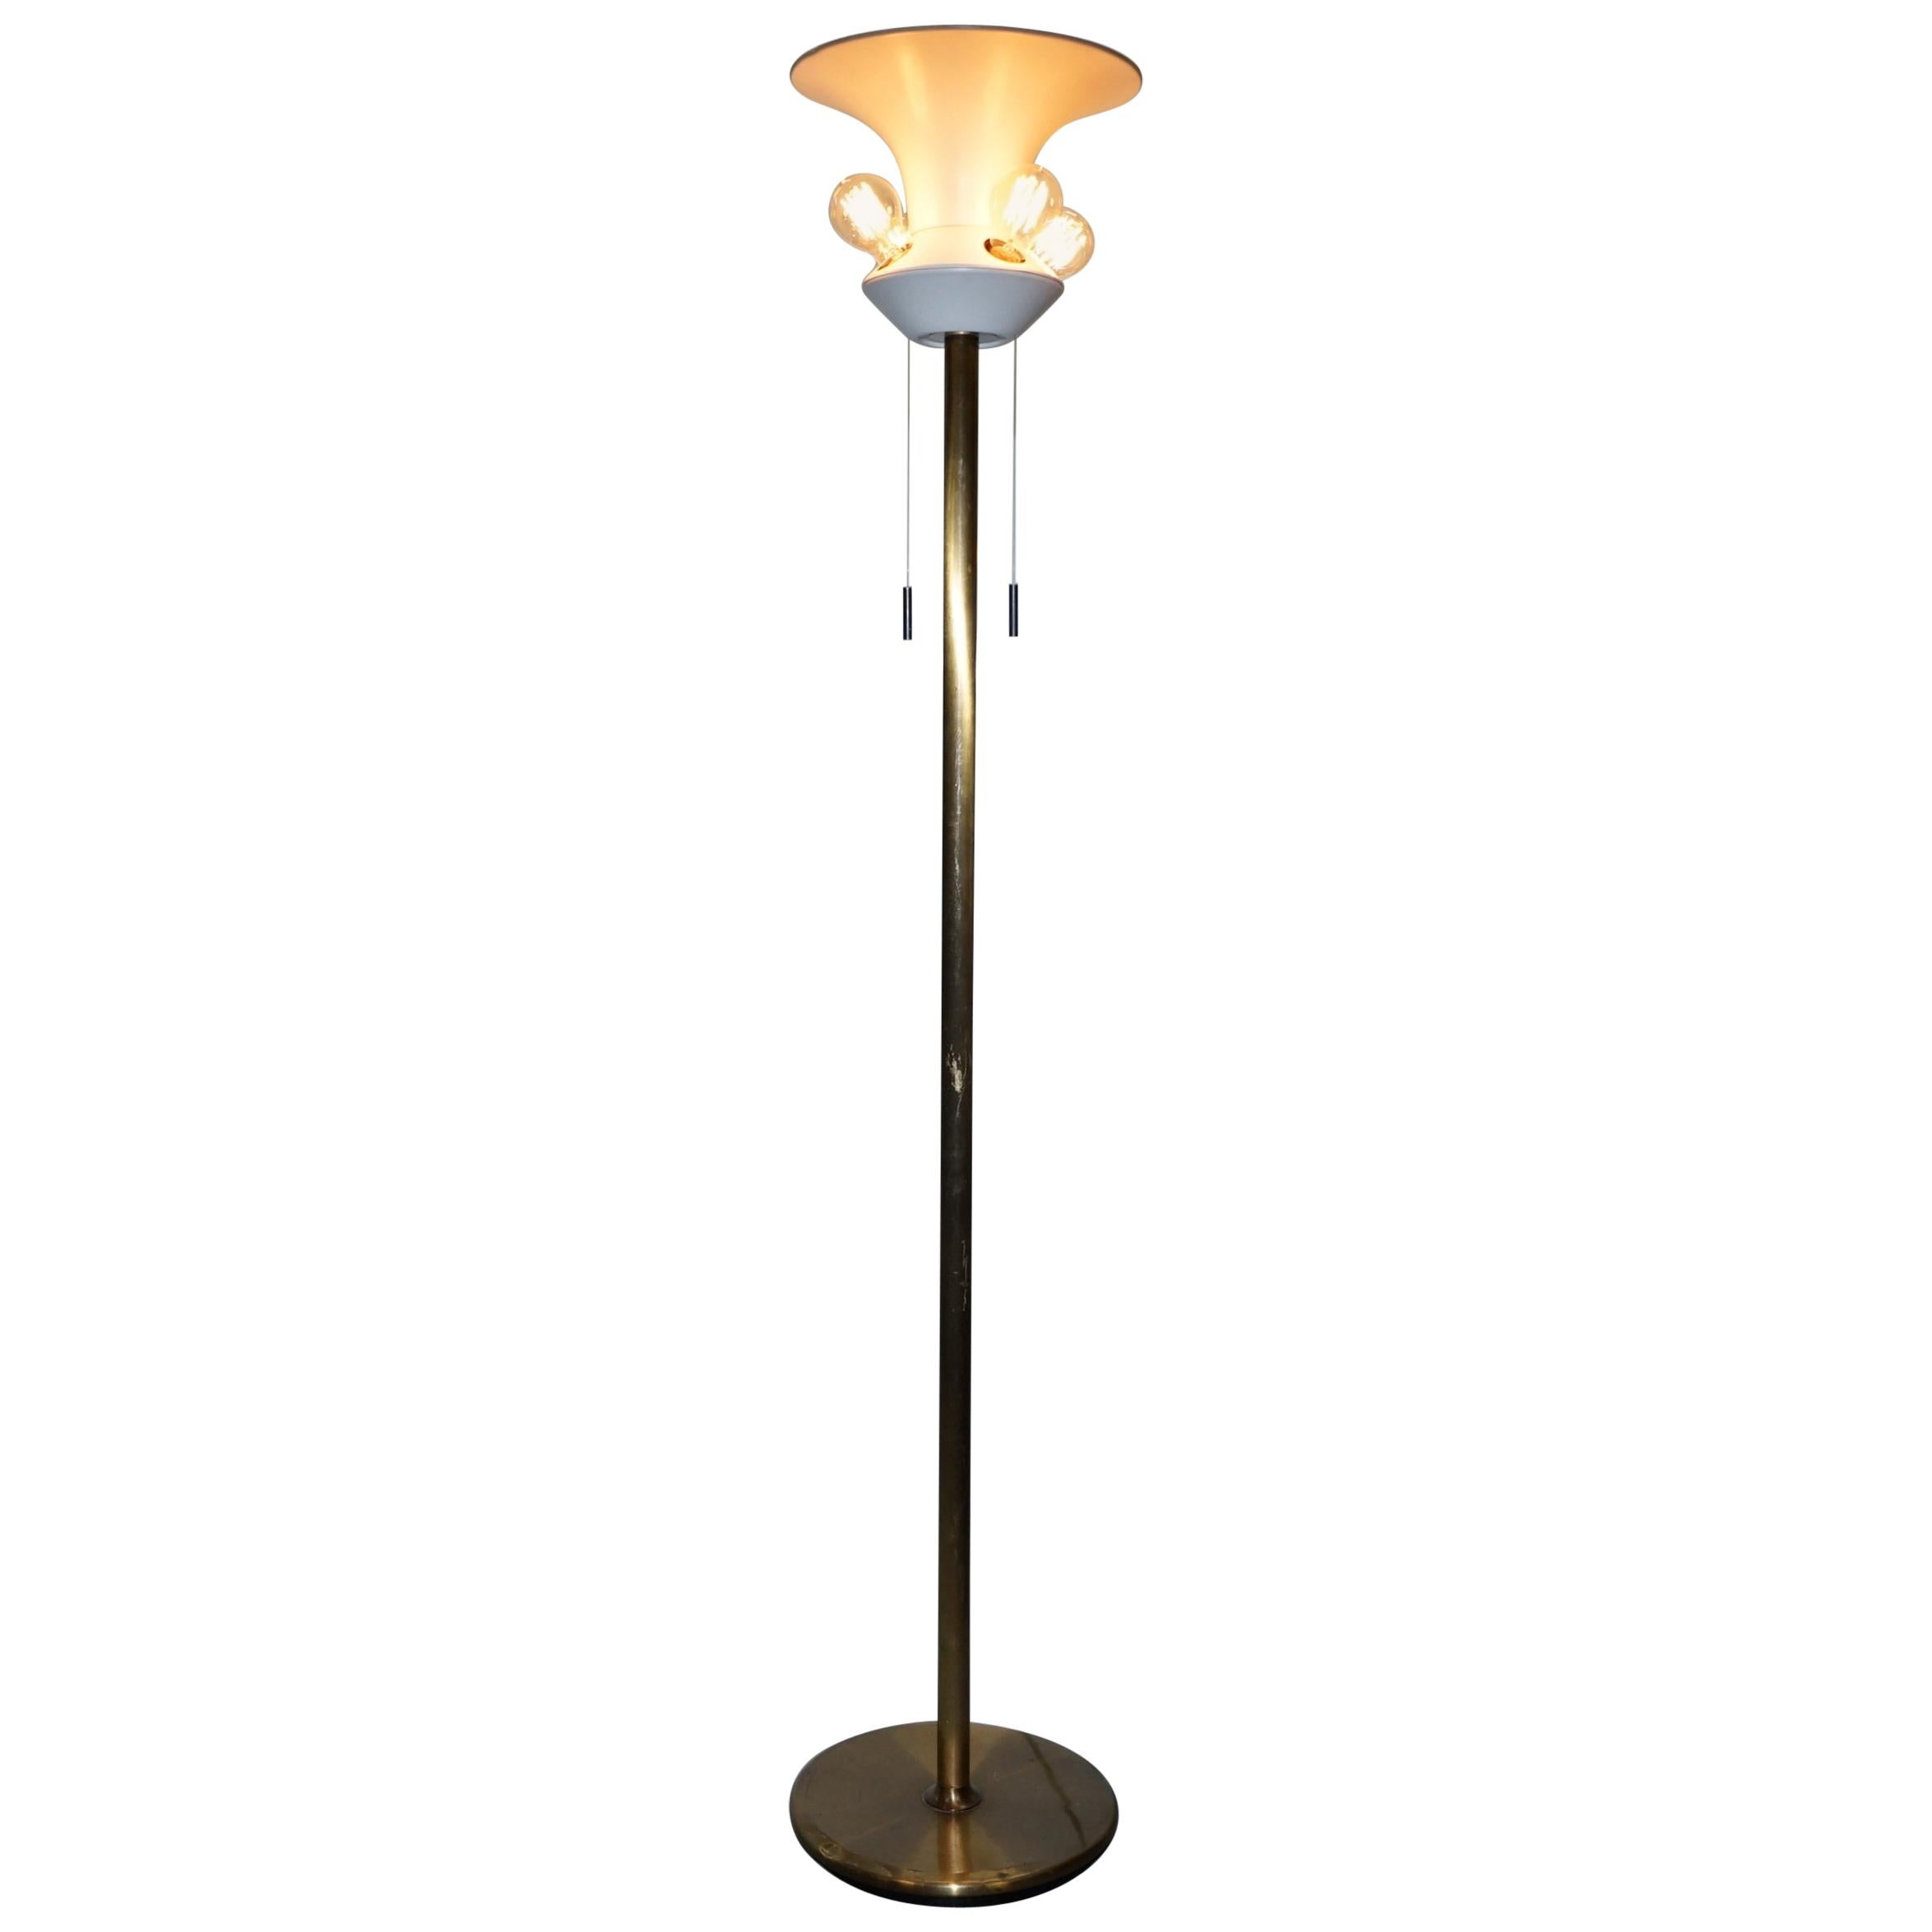 Lampadaire Art moderne d'origine rare sur pied à 5 ampoules, datant d'environ 1960, bronze